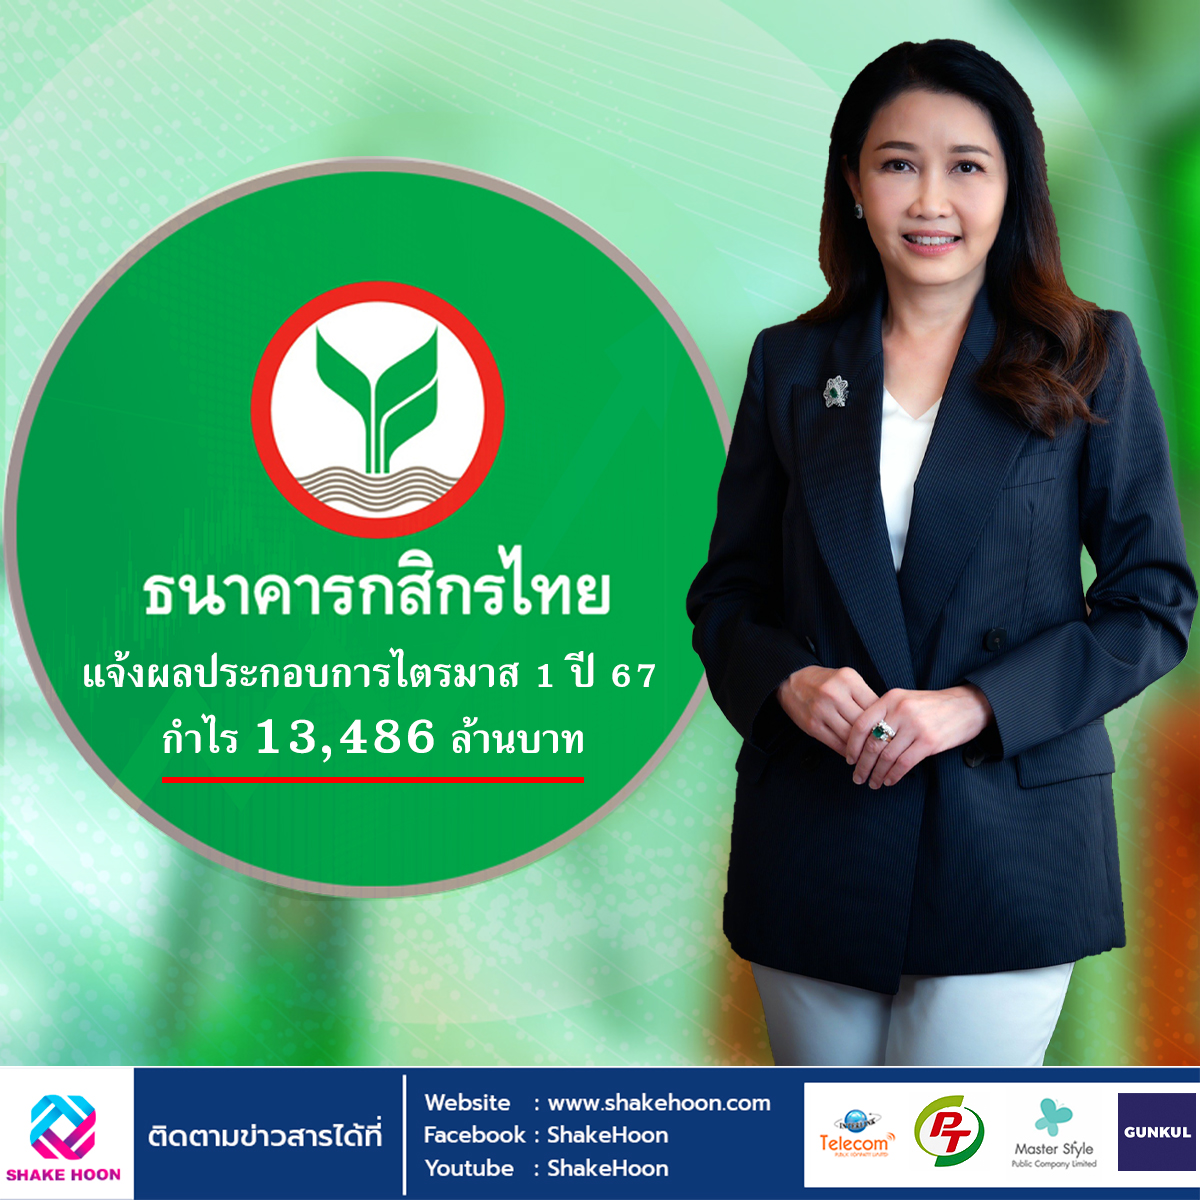 ธนาคารกสิกรไทย แจ้งผลประกอบการไตรมาส 1 ปี 67 กำไร 13,486 ล้านบาท